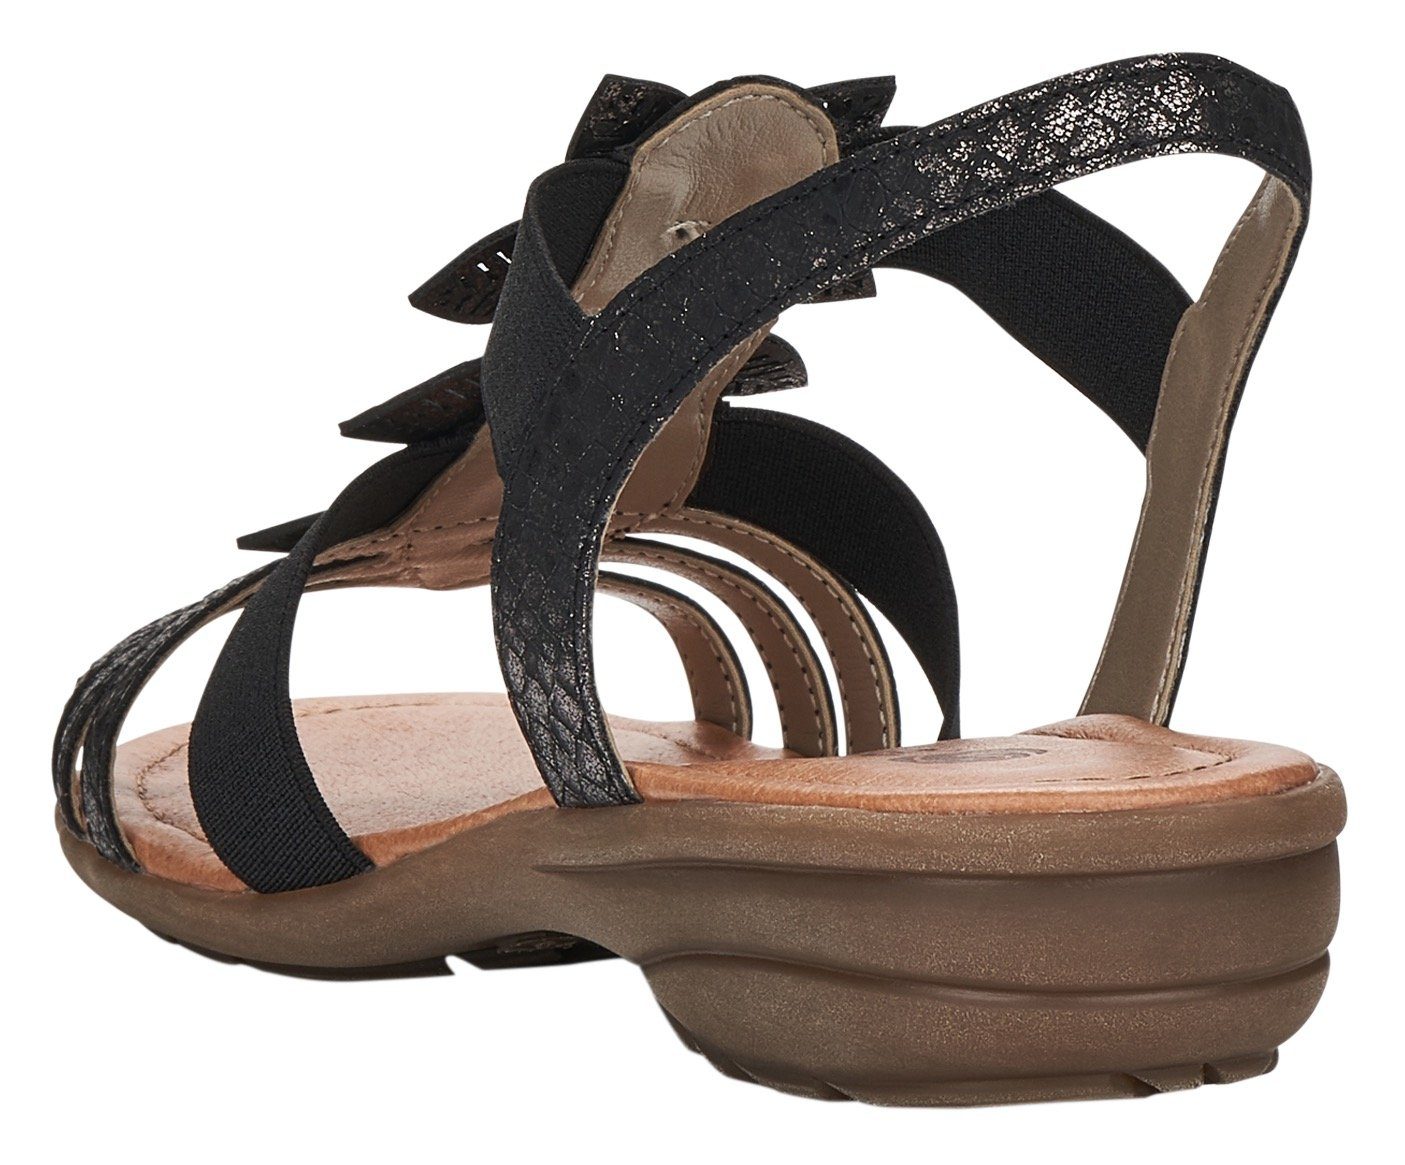 Sandale mit Remonte Blütenapplikation schwarz